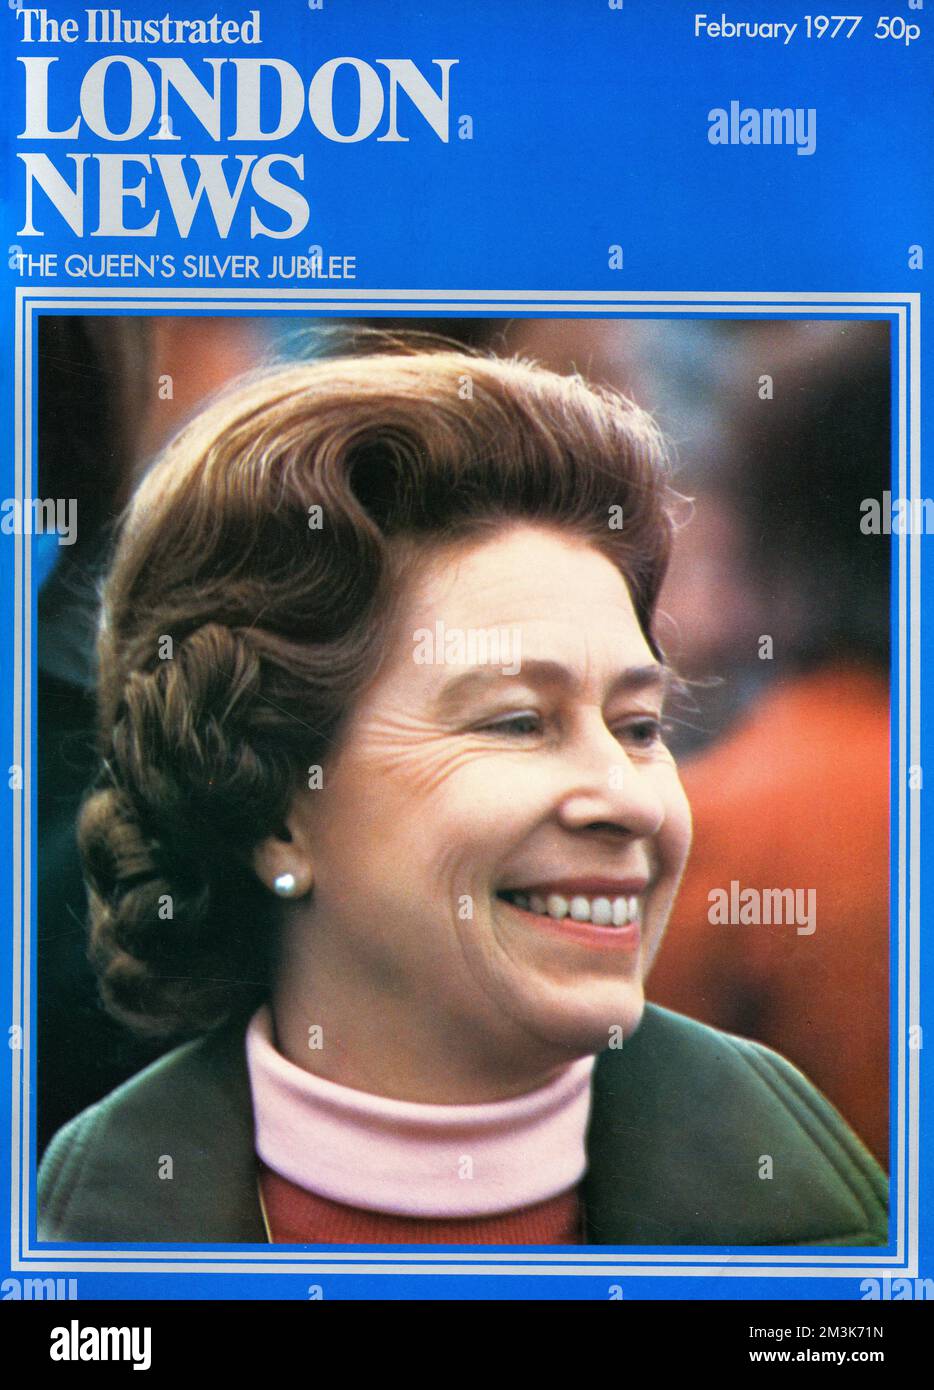 Une couverture de l'illustre London News montrant une reine Elizabeth II souriante dans l'année de son Jubilé d'argent. Date: 01/02/1977 Banque D'Images